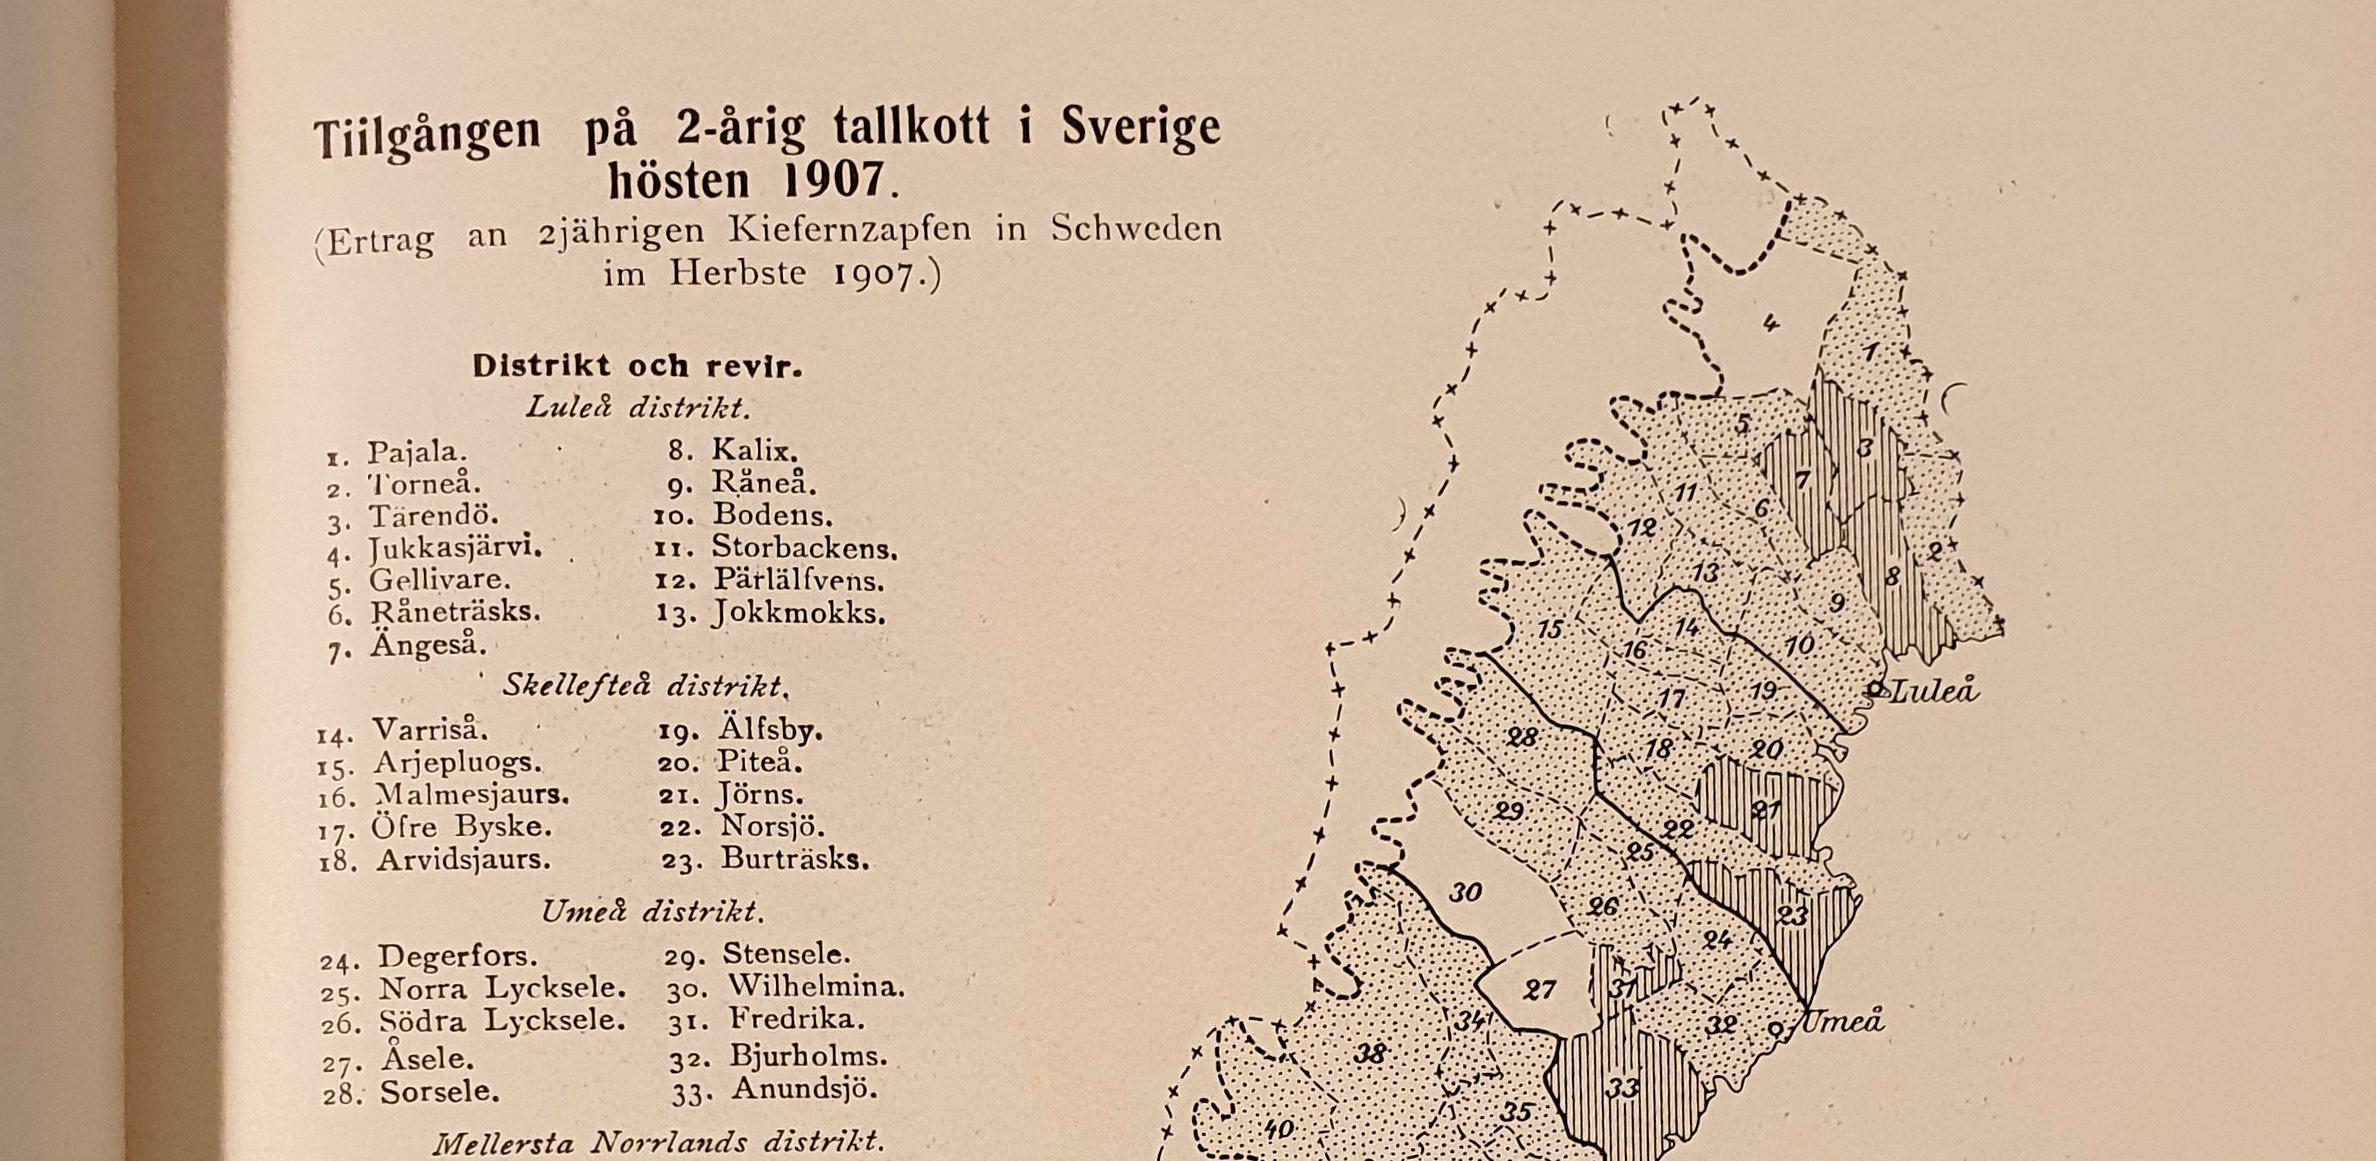 Foto av detalj av boksida med tabell och karta som visar resultatet av en inventering av kottar i norra Sverige.